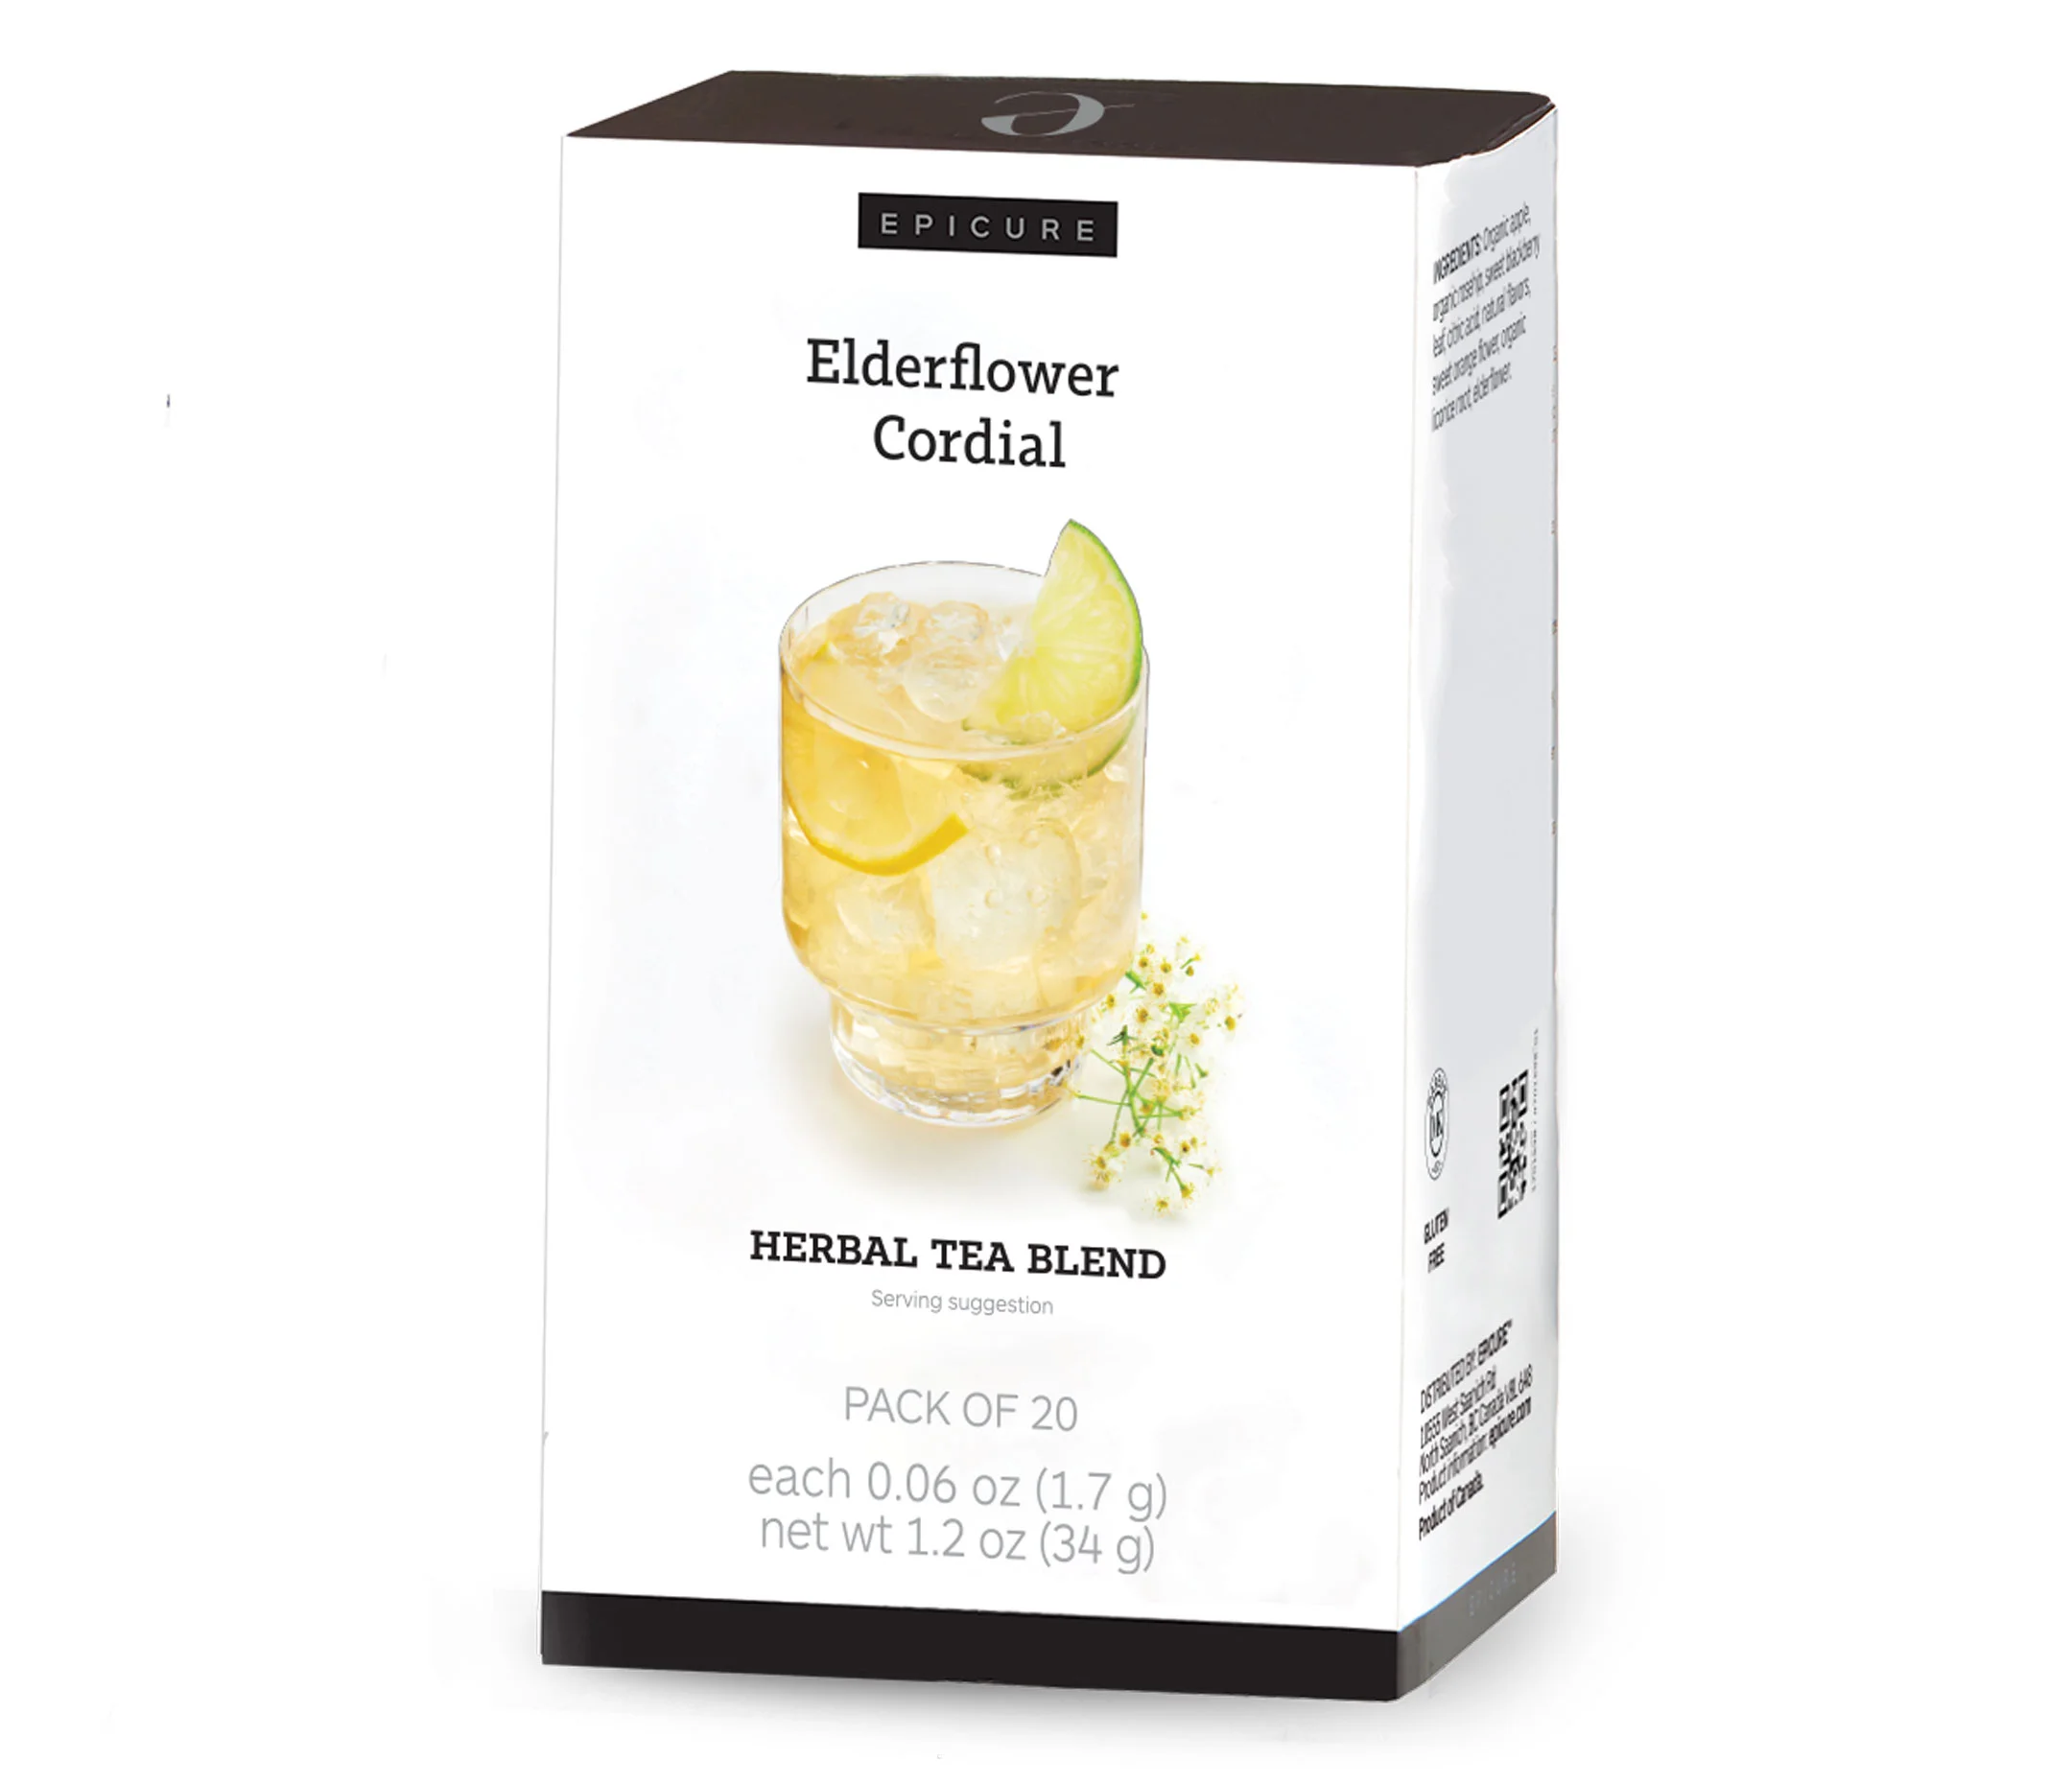 Elderflower Cordial Herbal Tea Blend